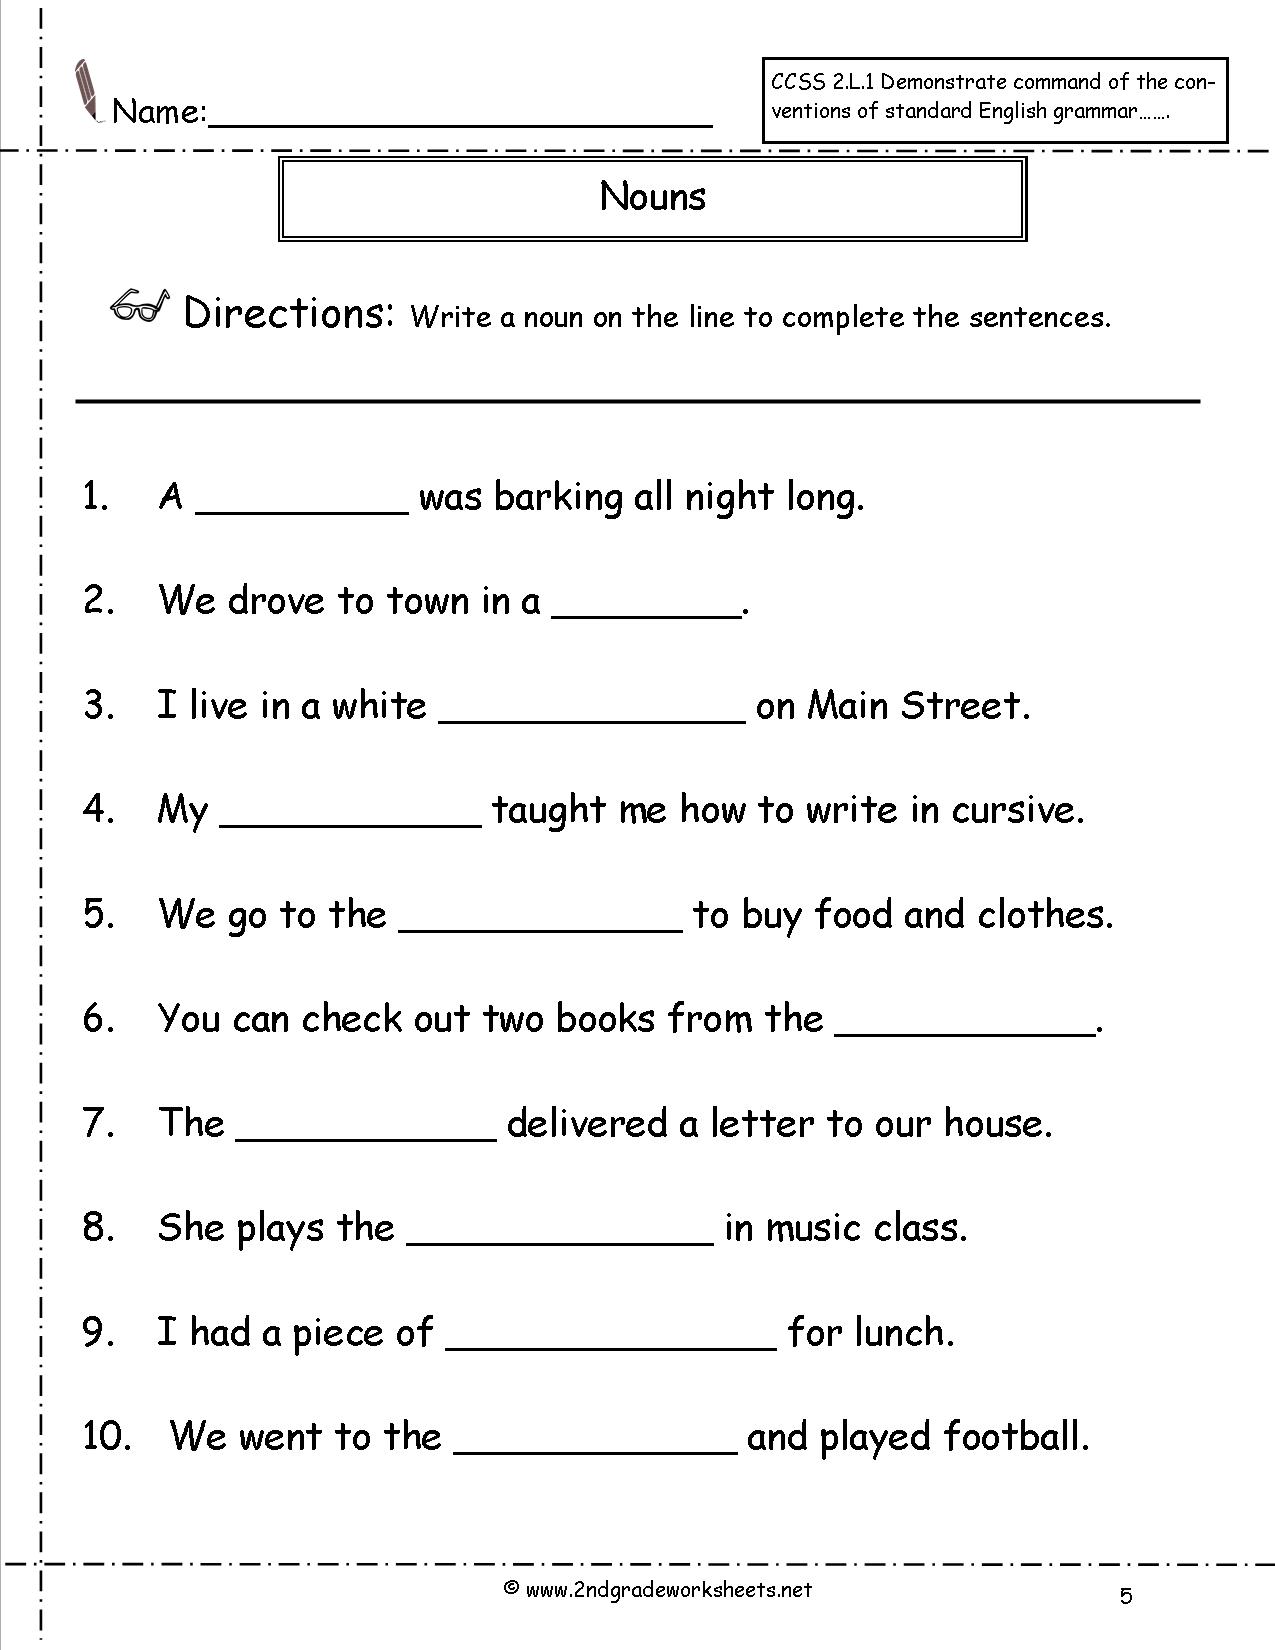 7-best-images-of-possessive-nouns-worksheet-6th-grade-possessive-nouns-worksheets-5th-grade